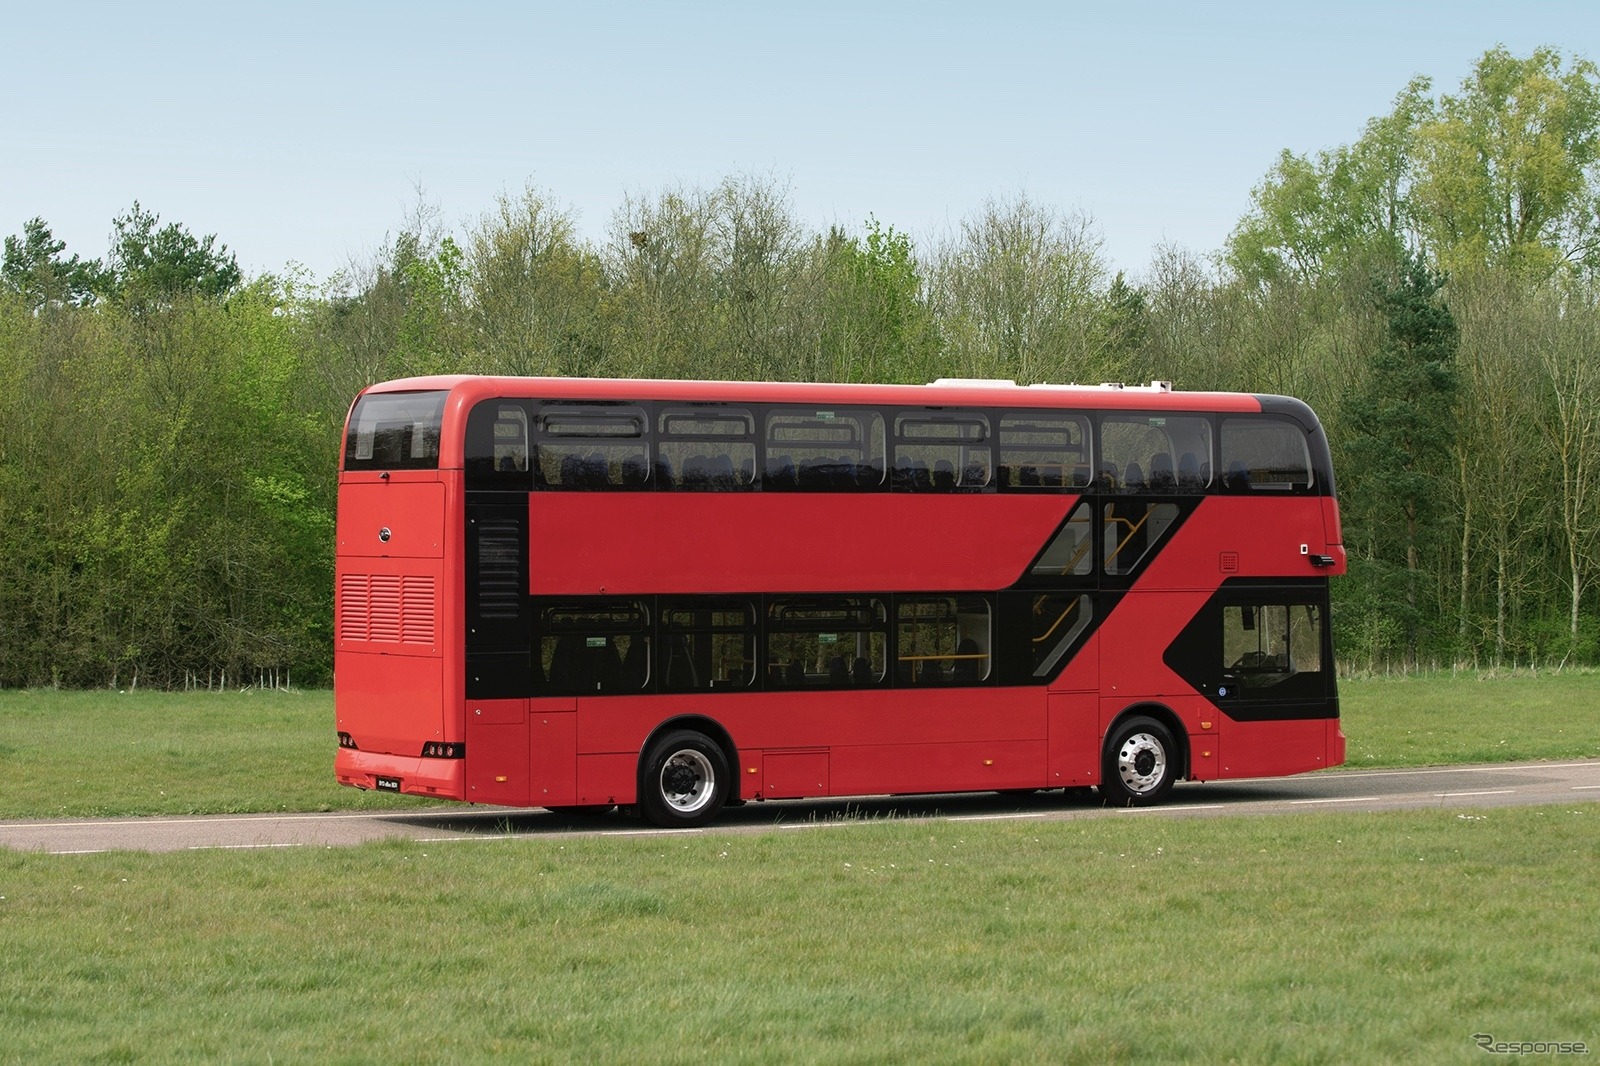 BYDの新型電動2階建てバス『BD11』